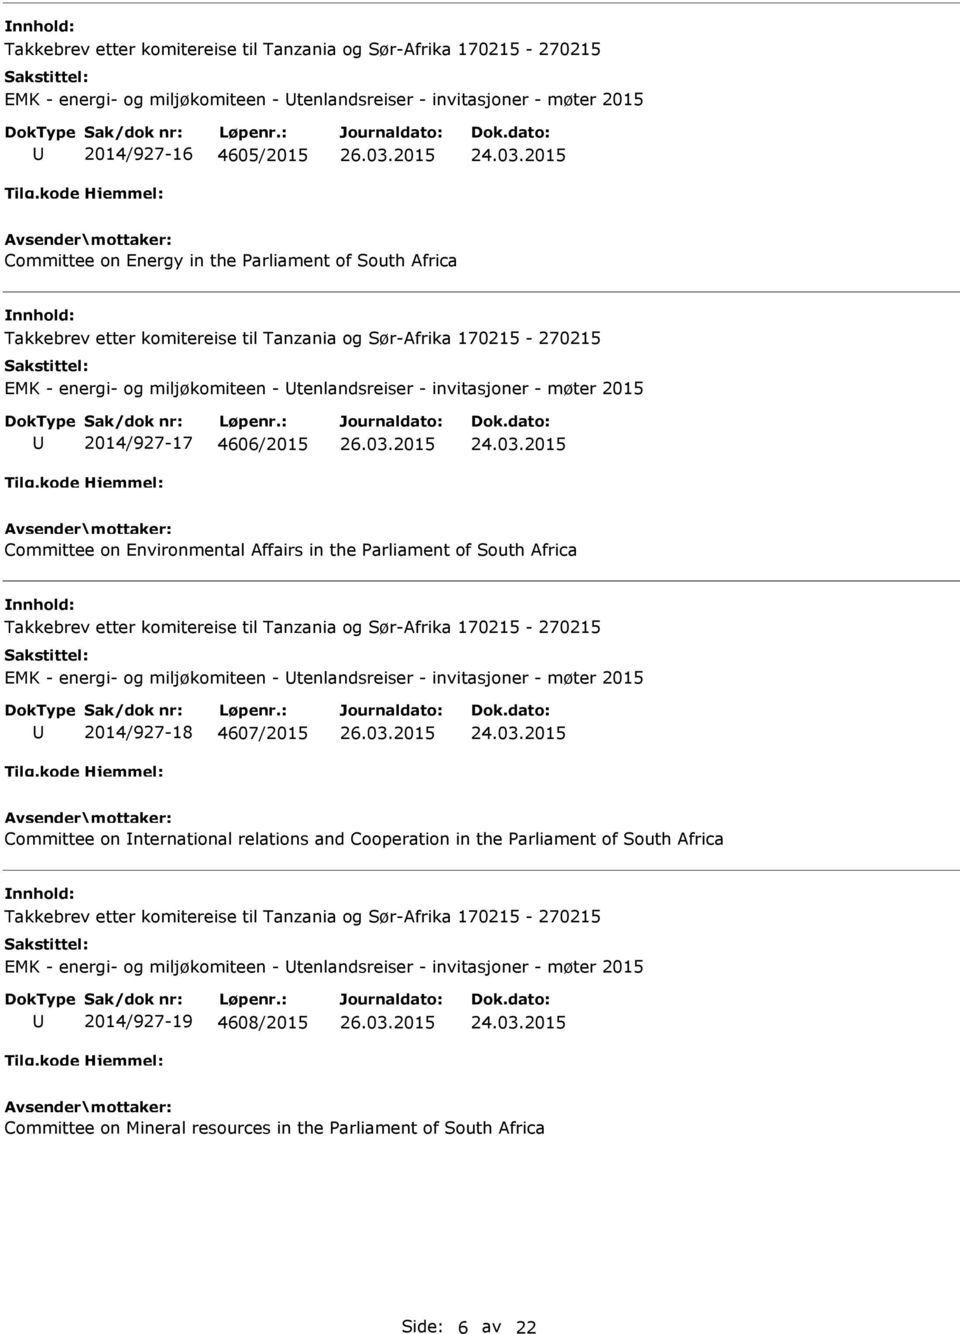 miljøkomiteen - tenlandsreiser - invitasjoner - møter 2015 2014/927-18 4607/2015 Committee on nternational relations and Cooperation in the Parliament of South Africa